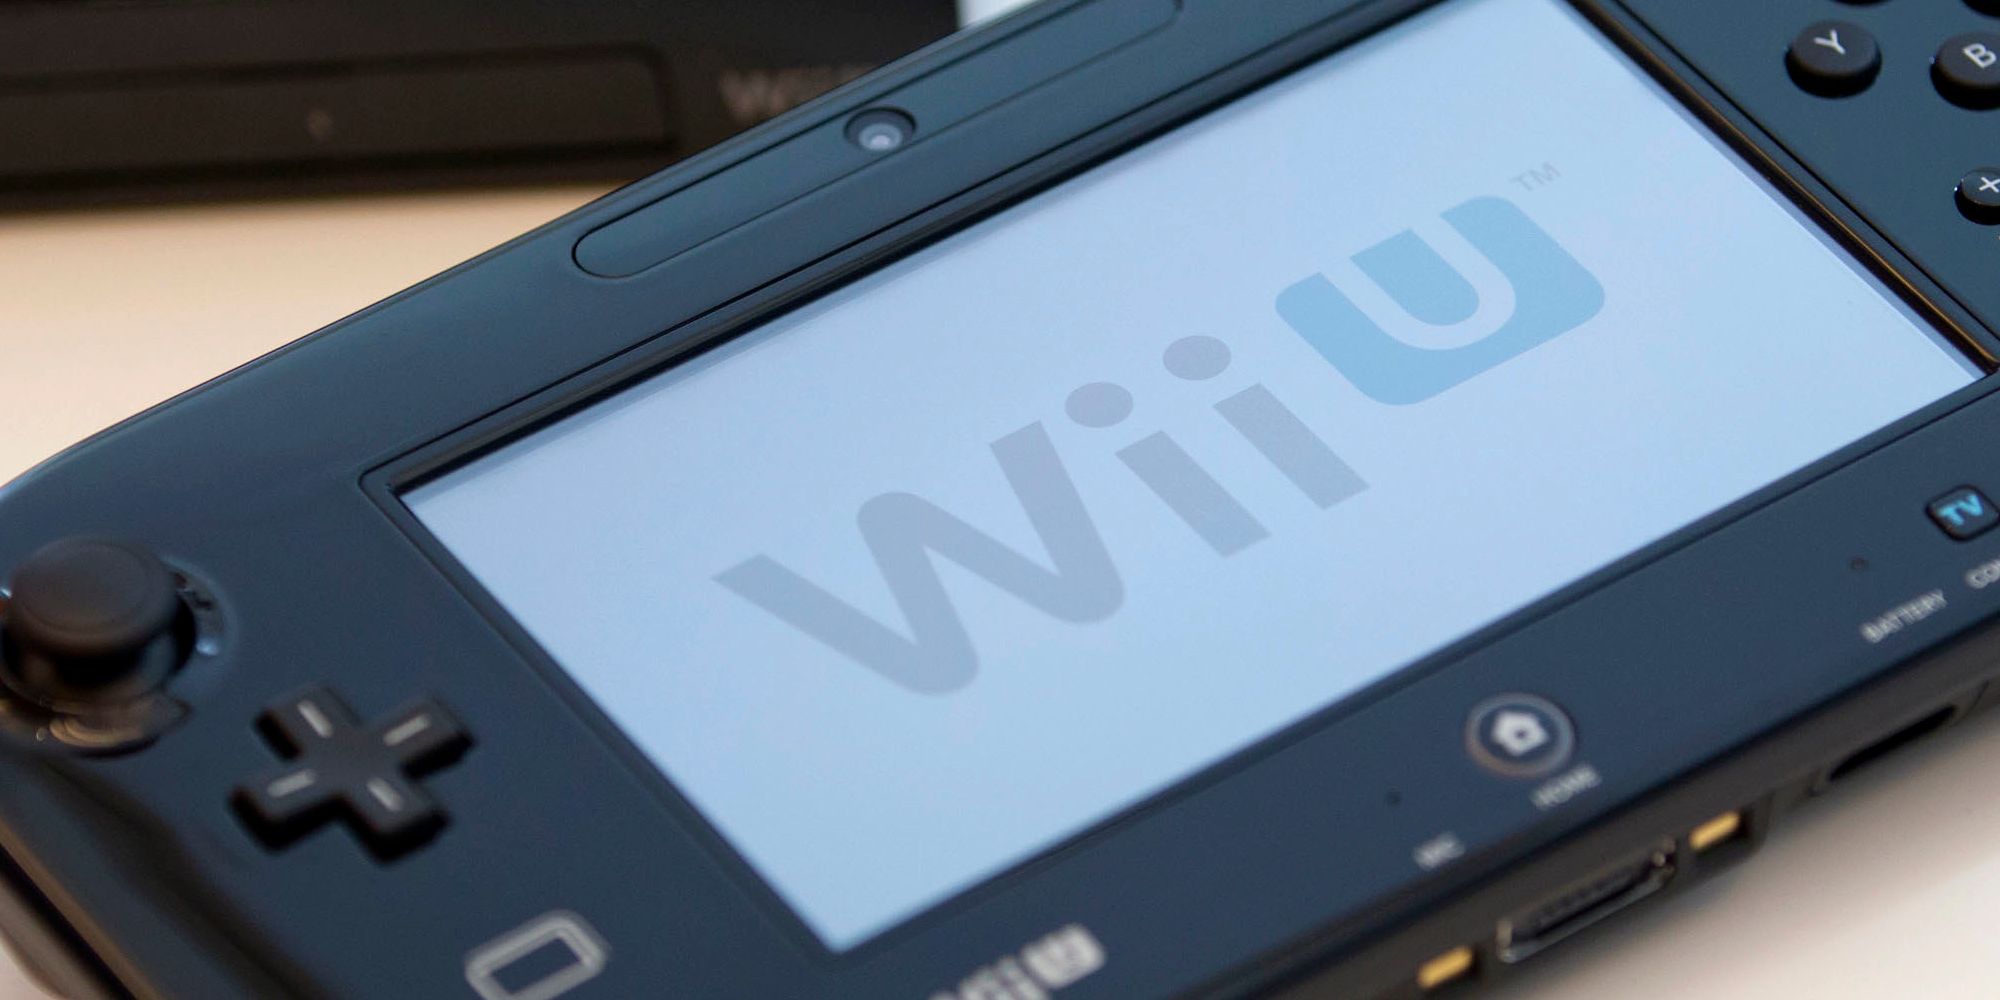 The Wii U GamePad